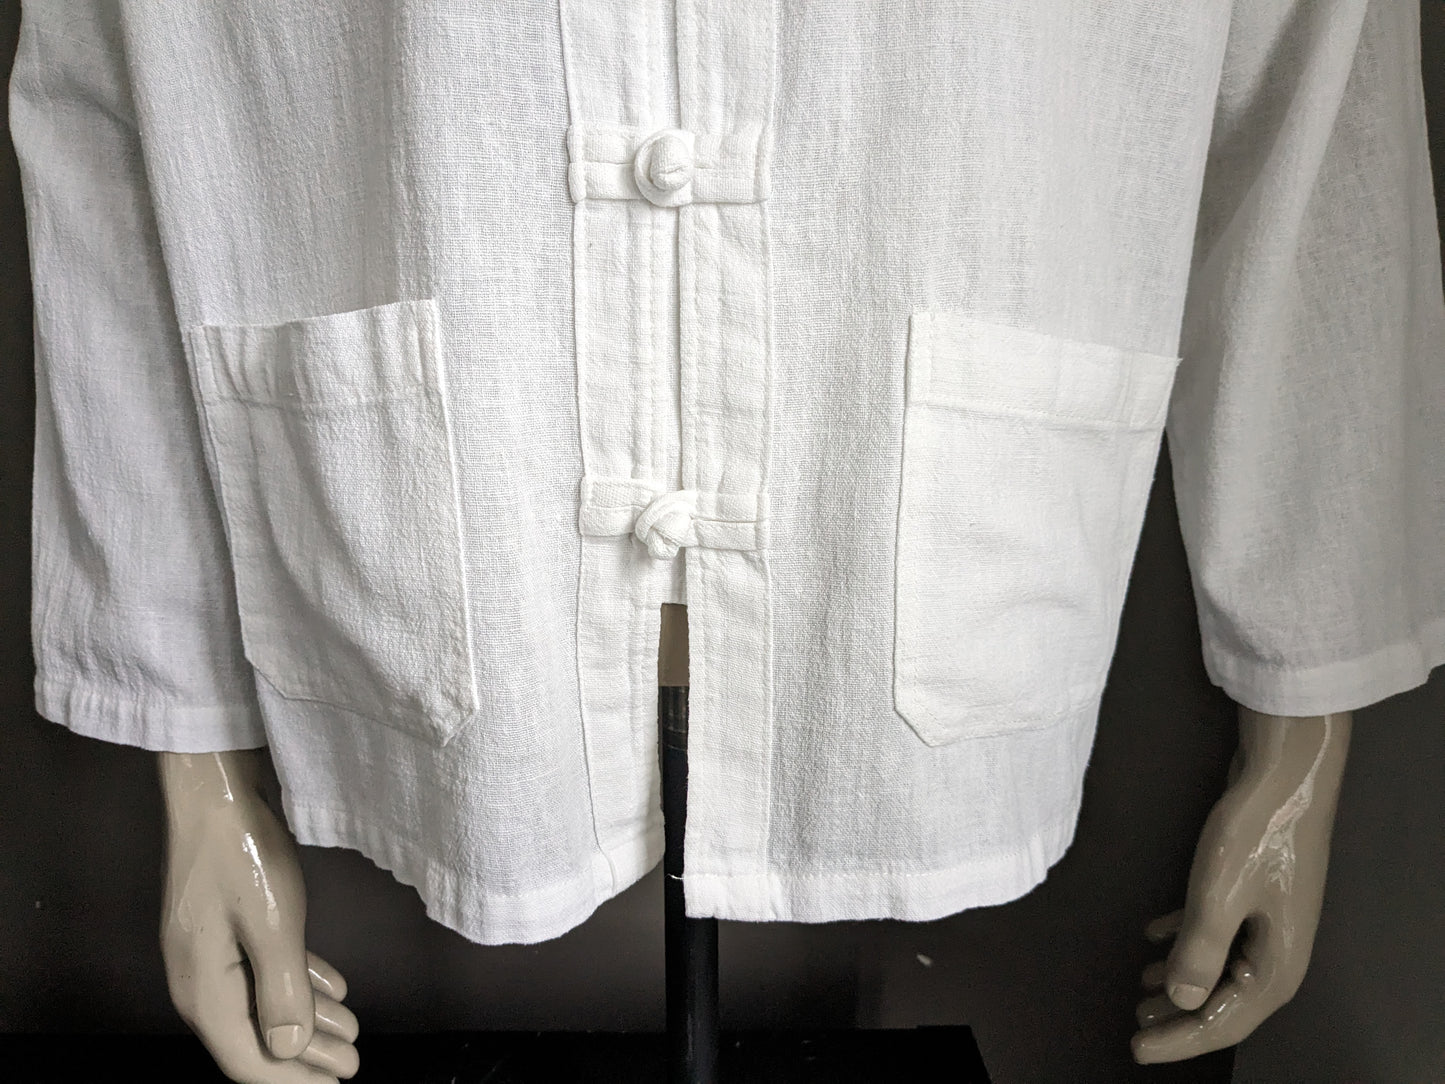 Vintage -Hemd mit Mao / Angehobener Kragen. Baumwollknoten und Taschen. Größe xl.